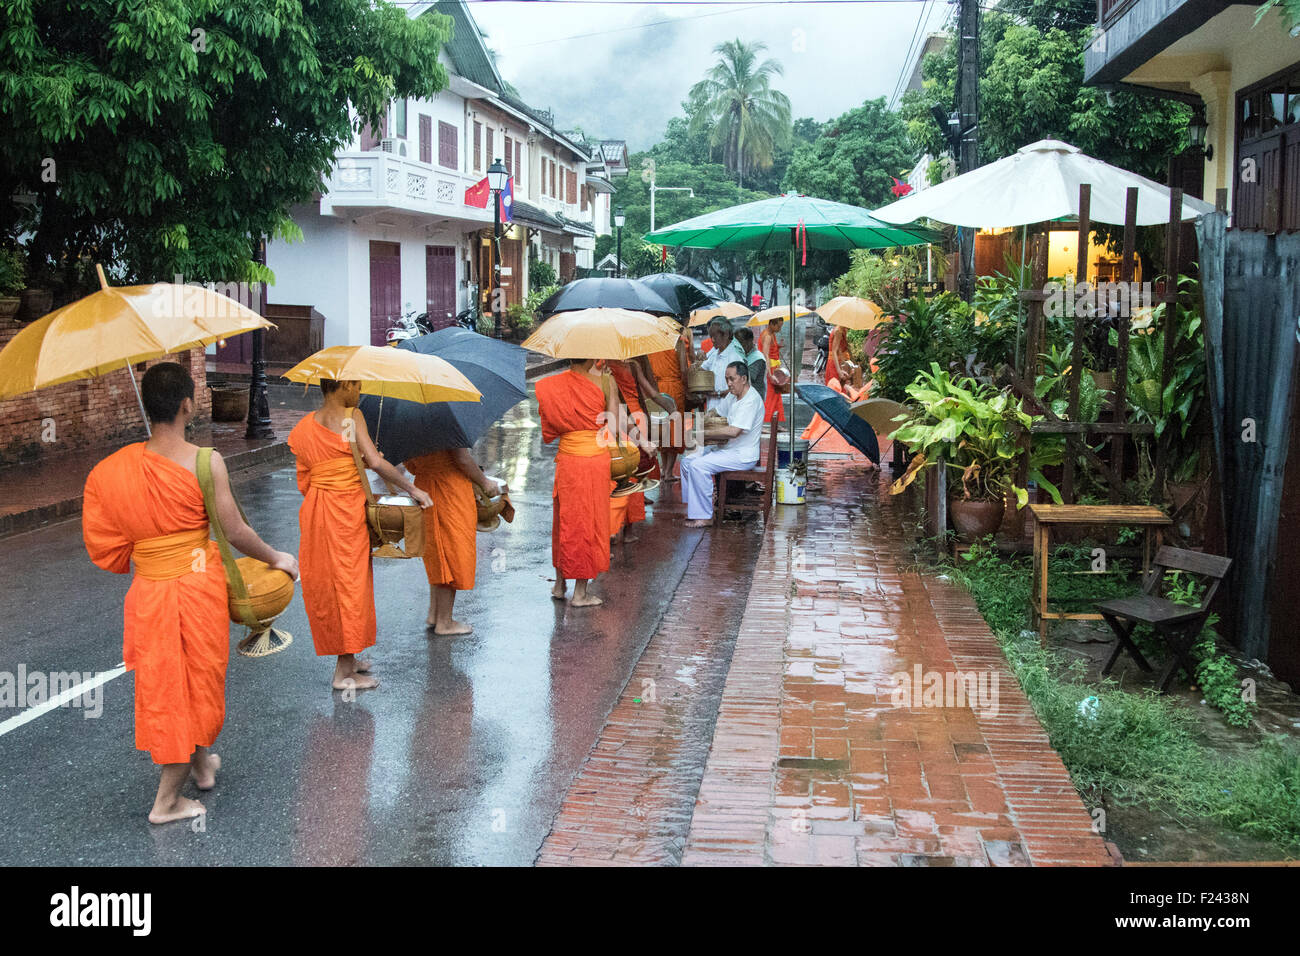 Buddhistische Mönche sammeln Almosen kostenloses Essen Nächstenliebe Stockfoto